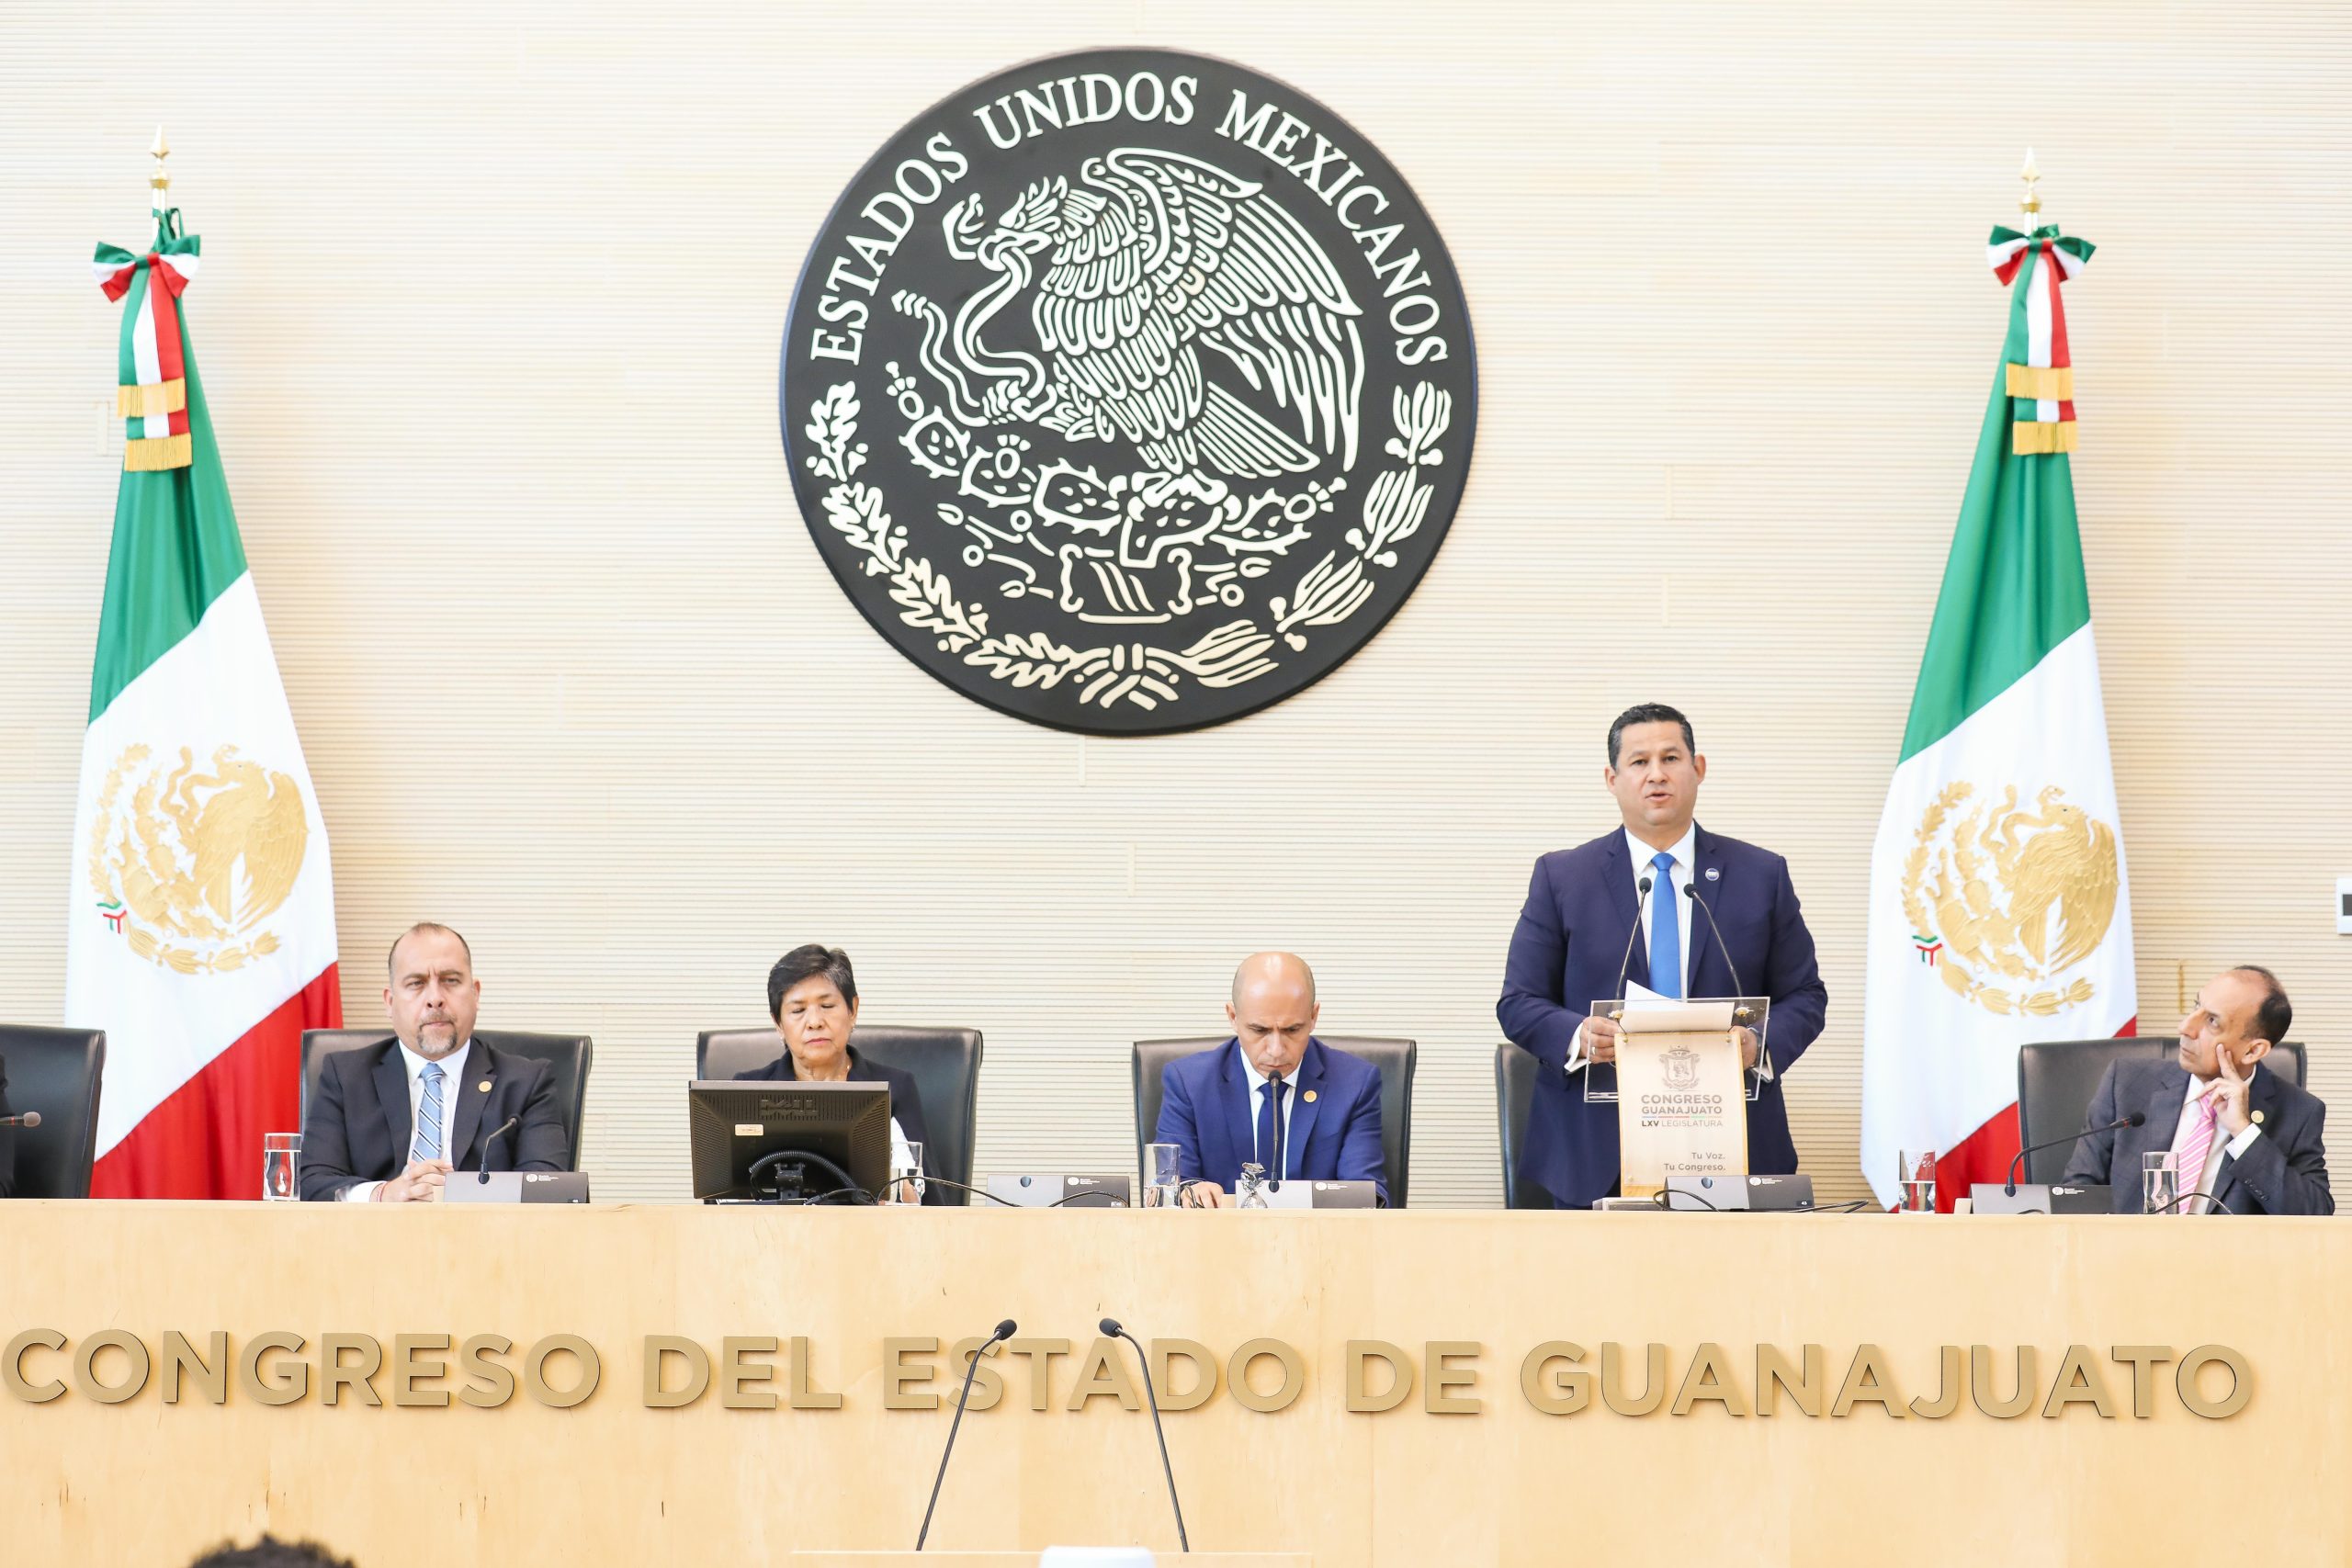 El diálogo es el camino para la construcción de acuerdos en Guanajuato:  Diego Sinhue Rodríguez